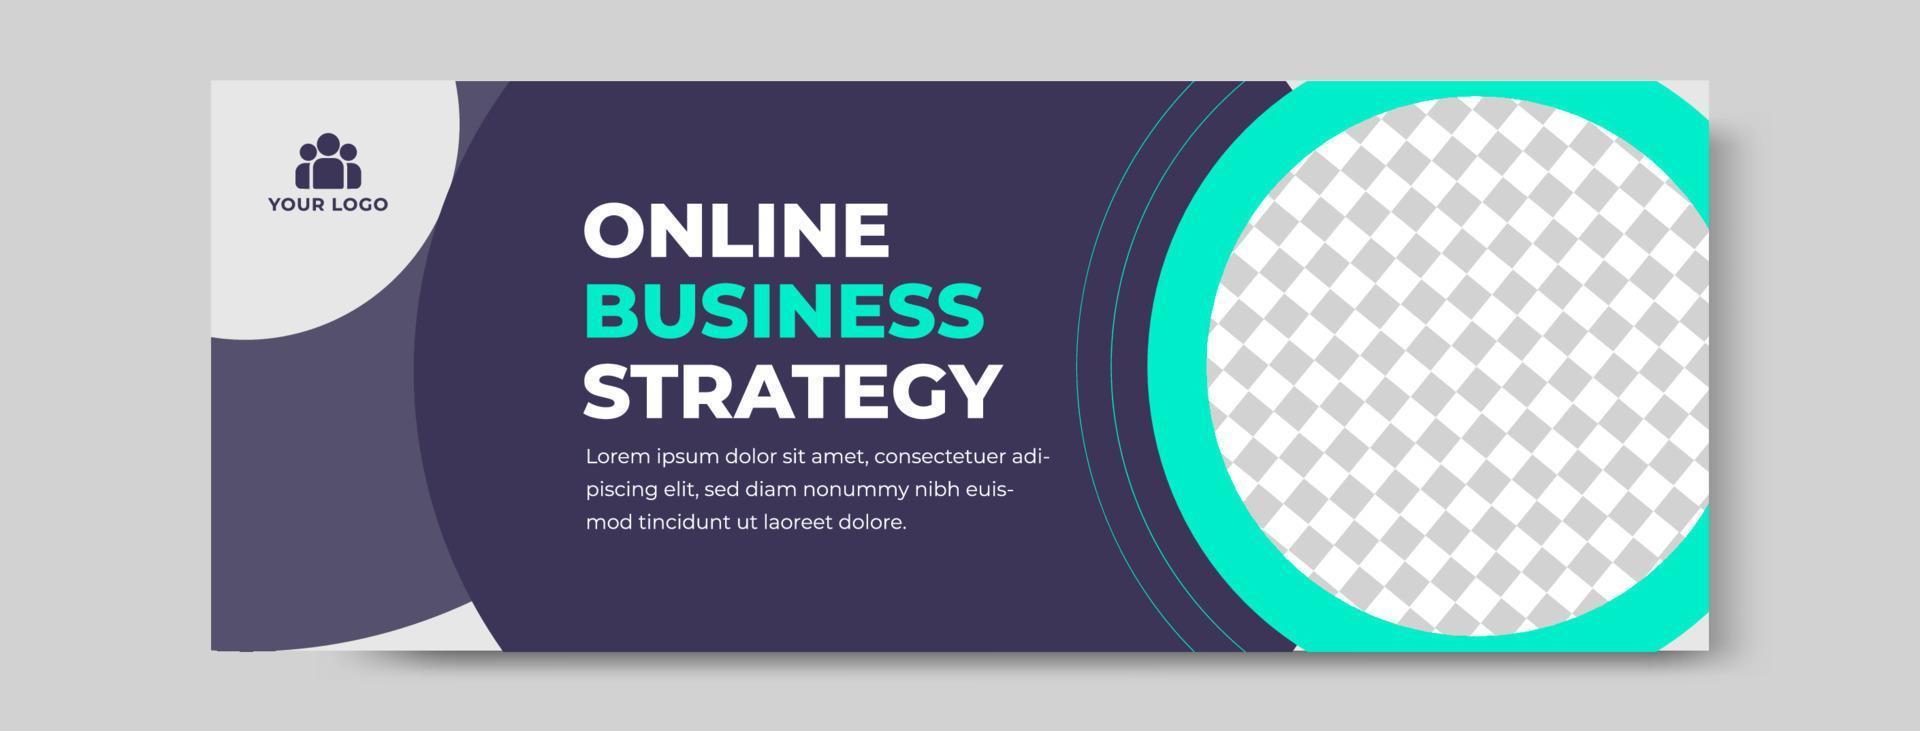 Banner für Online-Geschäftsstrategien vektor